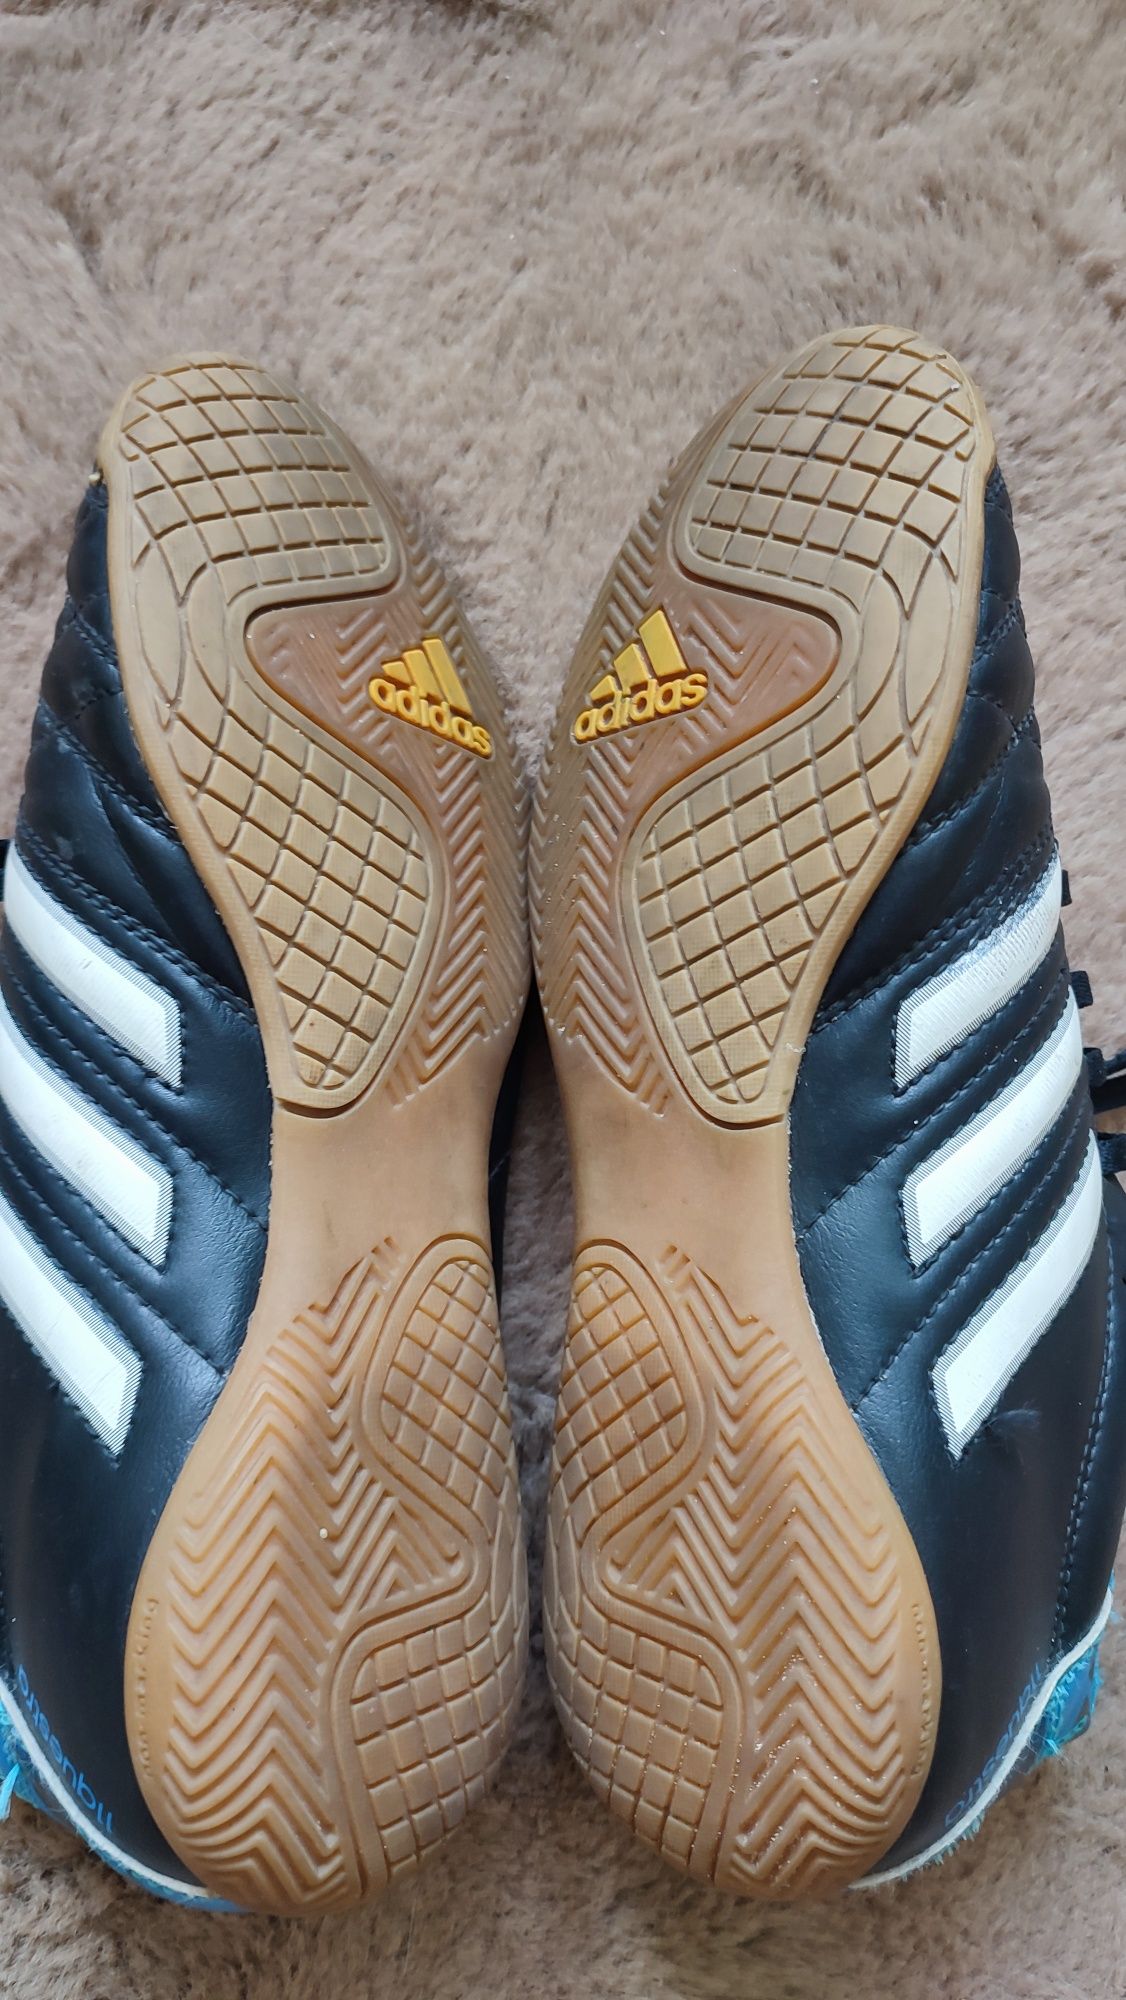 Buty sportowe oryginalne Adidas rozm 39 1/3 wkładka na zdjęciu